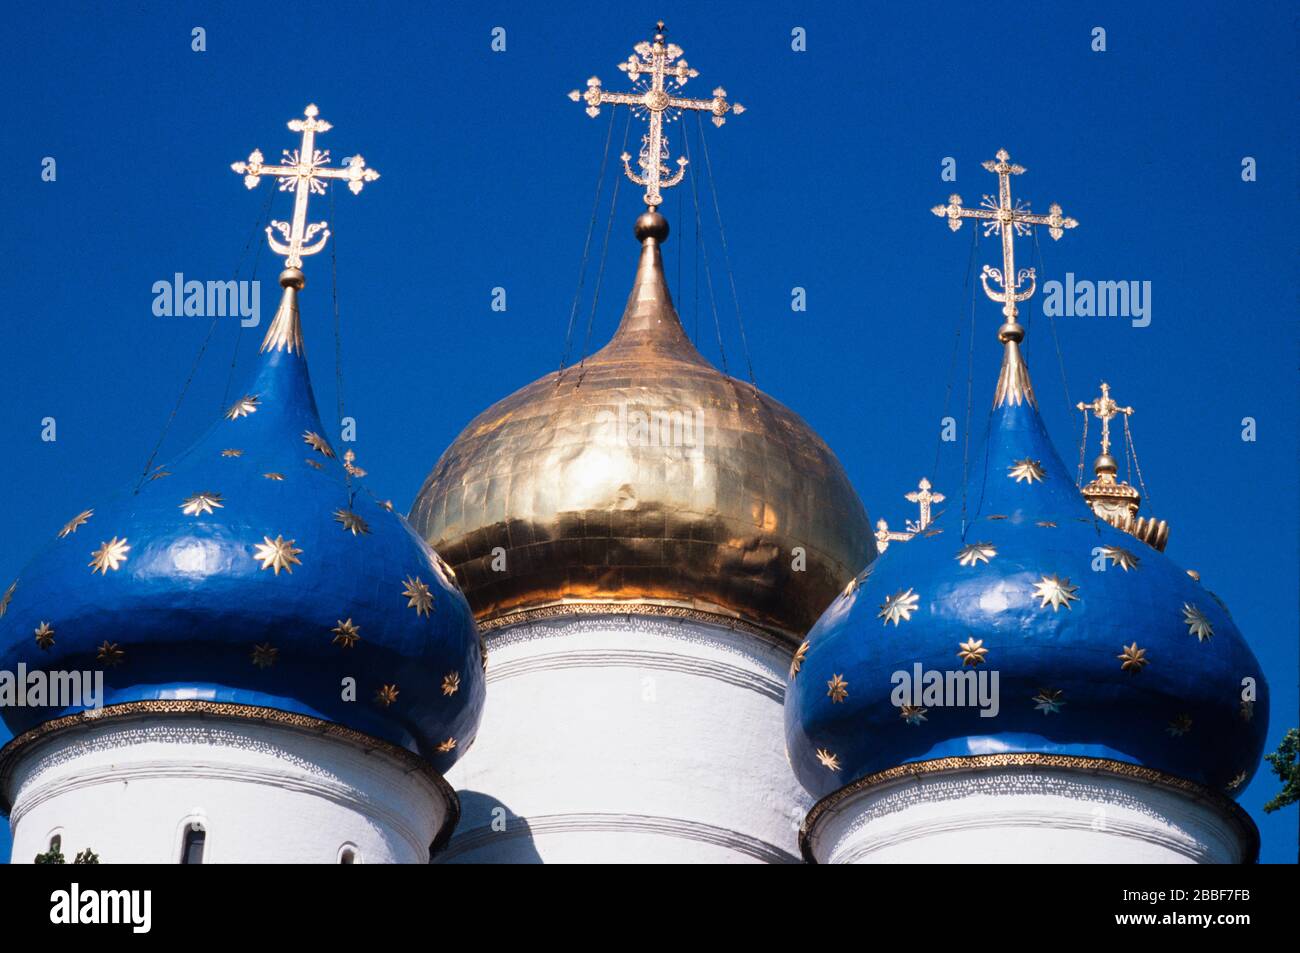 Kuppeln der Dreifaltigkeitskirche Lavra des Hl. Sergius, das wichtigste russische Kloster der Russisch-Orthodoxen Kirche, in Sergijew Posad, 70 km von Moskau entfernt. Stockfoto